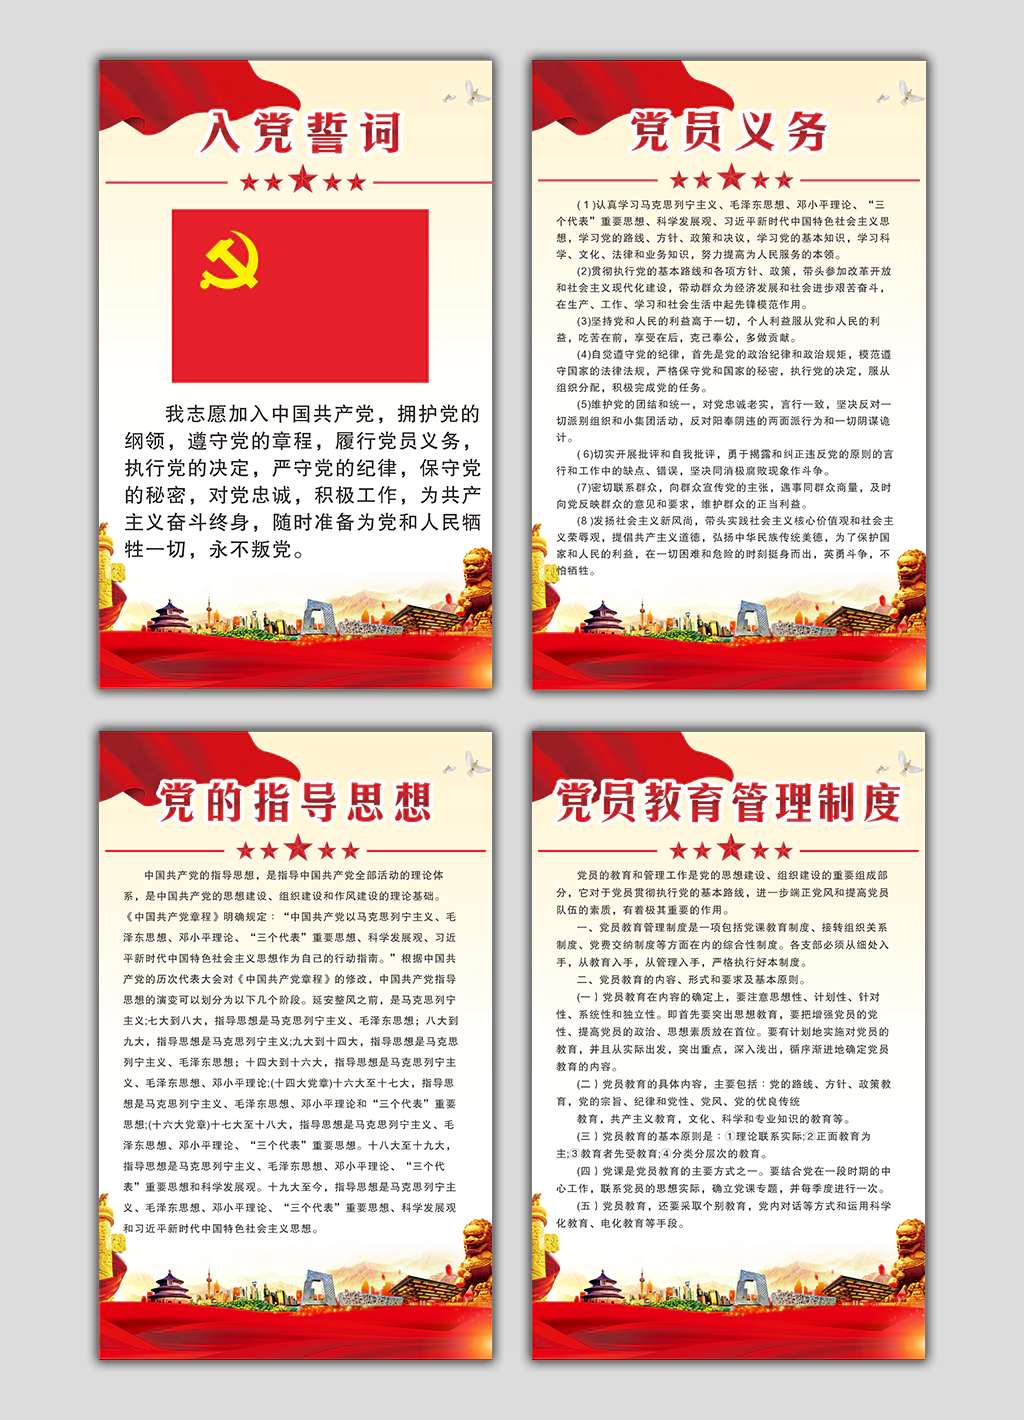 国企央企党支部建设相关规章制度宣传挂图